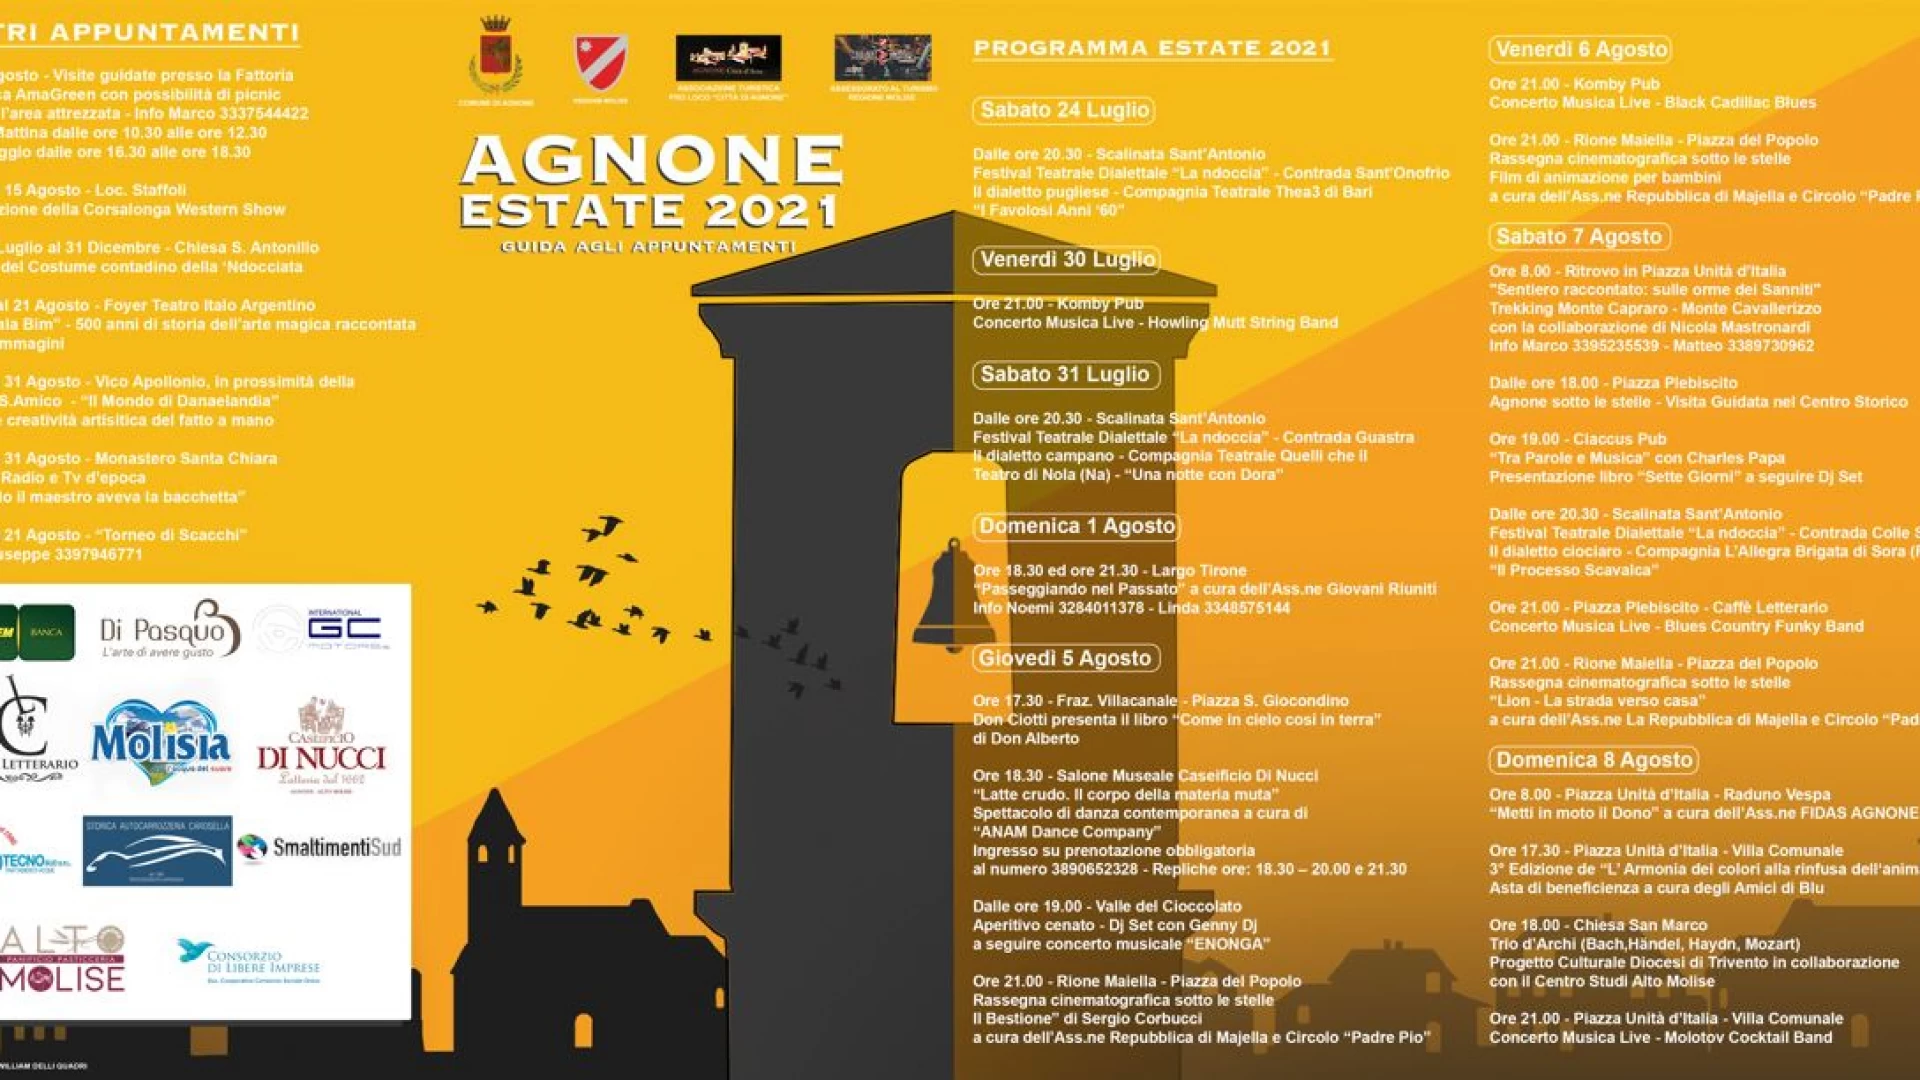 Agnone Estate 2021: pronto il calendario degli eventi e delle attività estive che si terranno nella Città di Agnone durante le prossime settimane.